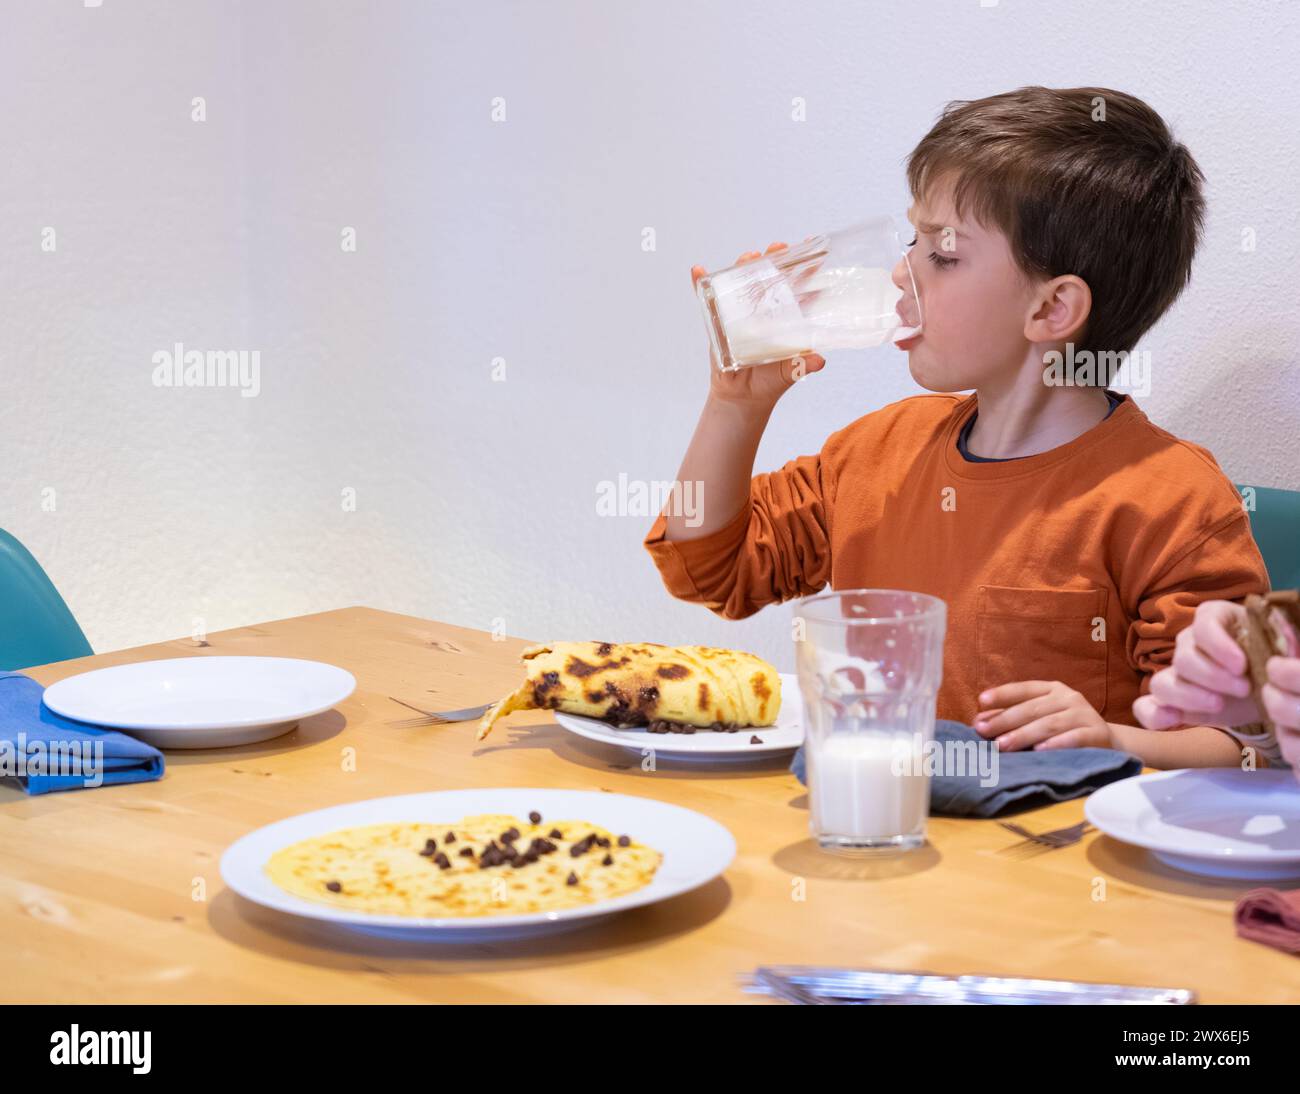 Junge beim Frühstück, trinkt ein Glas Milch und isst einen Pfannkuchen Stockfoto